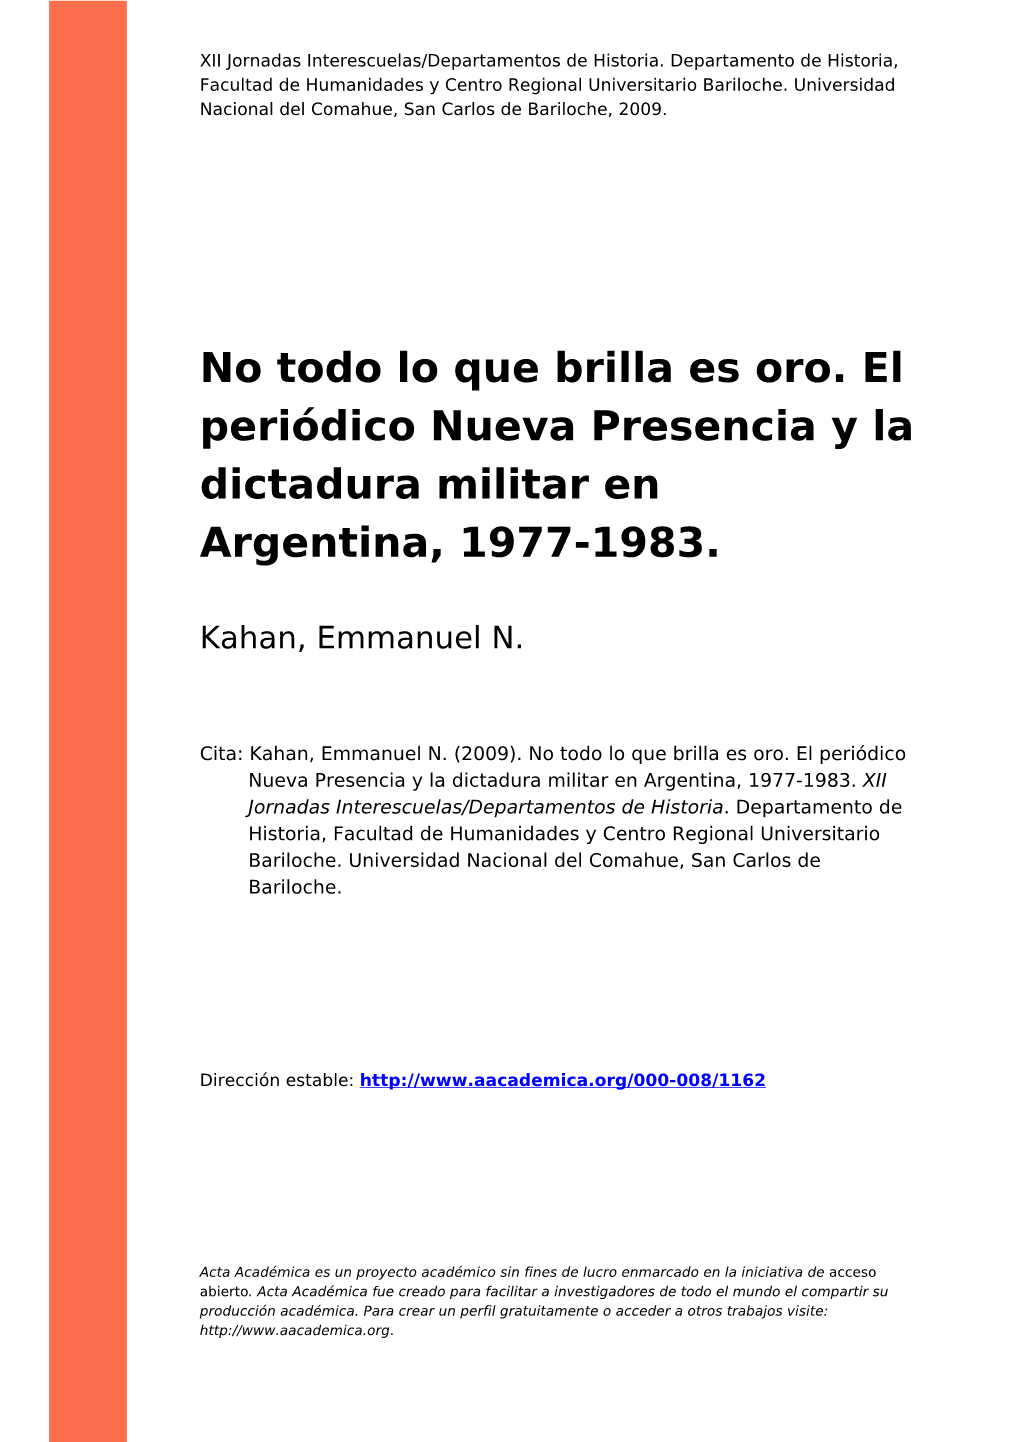 No Todo Lo Que Brilla Es Oro. El Periódico Nueva Presencia Y La Dictadura Militar En Argentina, 1977-1983